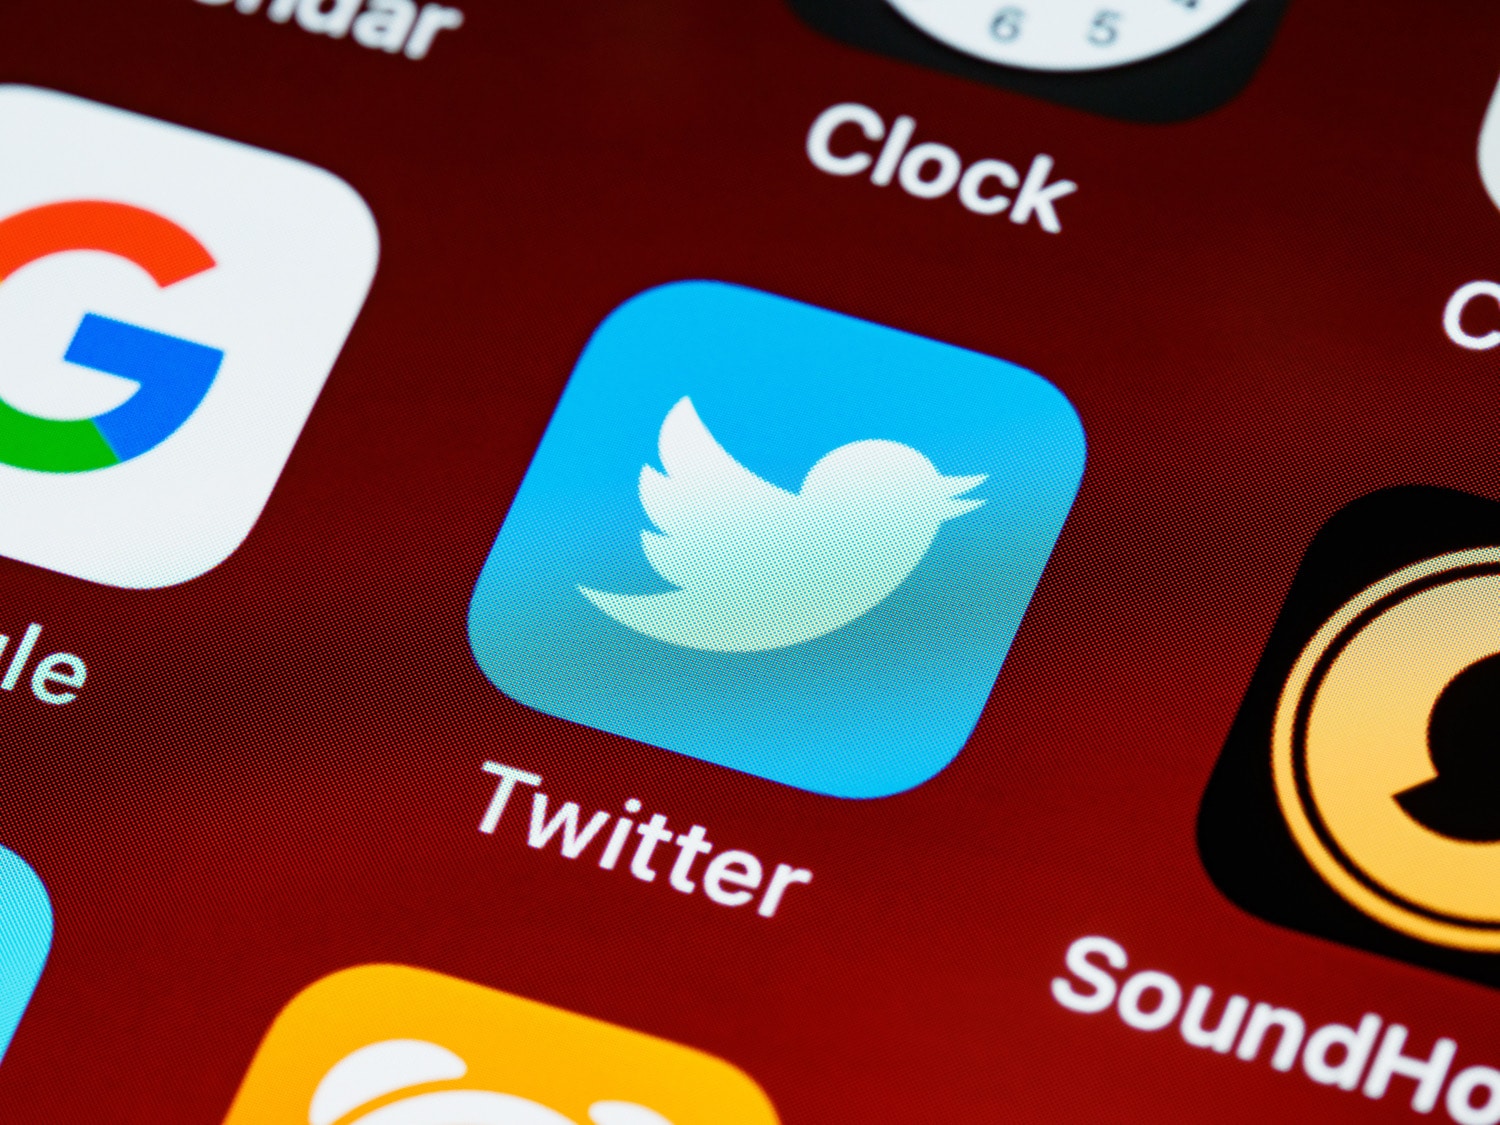 Twitter App Icon auf rotem Hintergrund mit anderen Apps